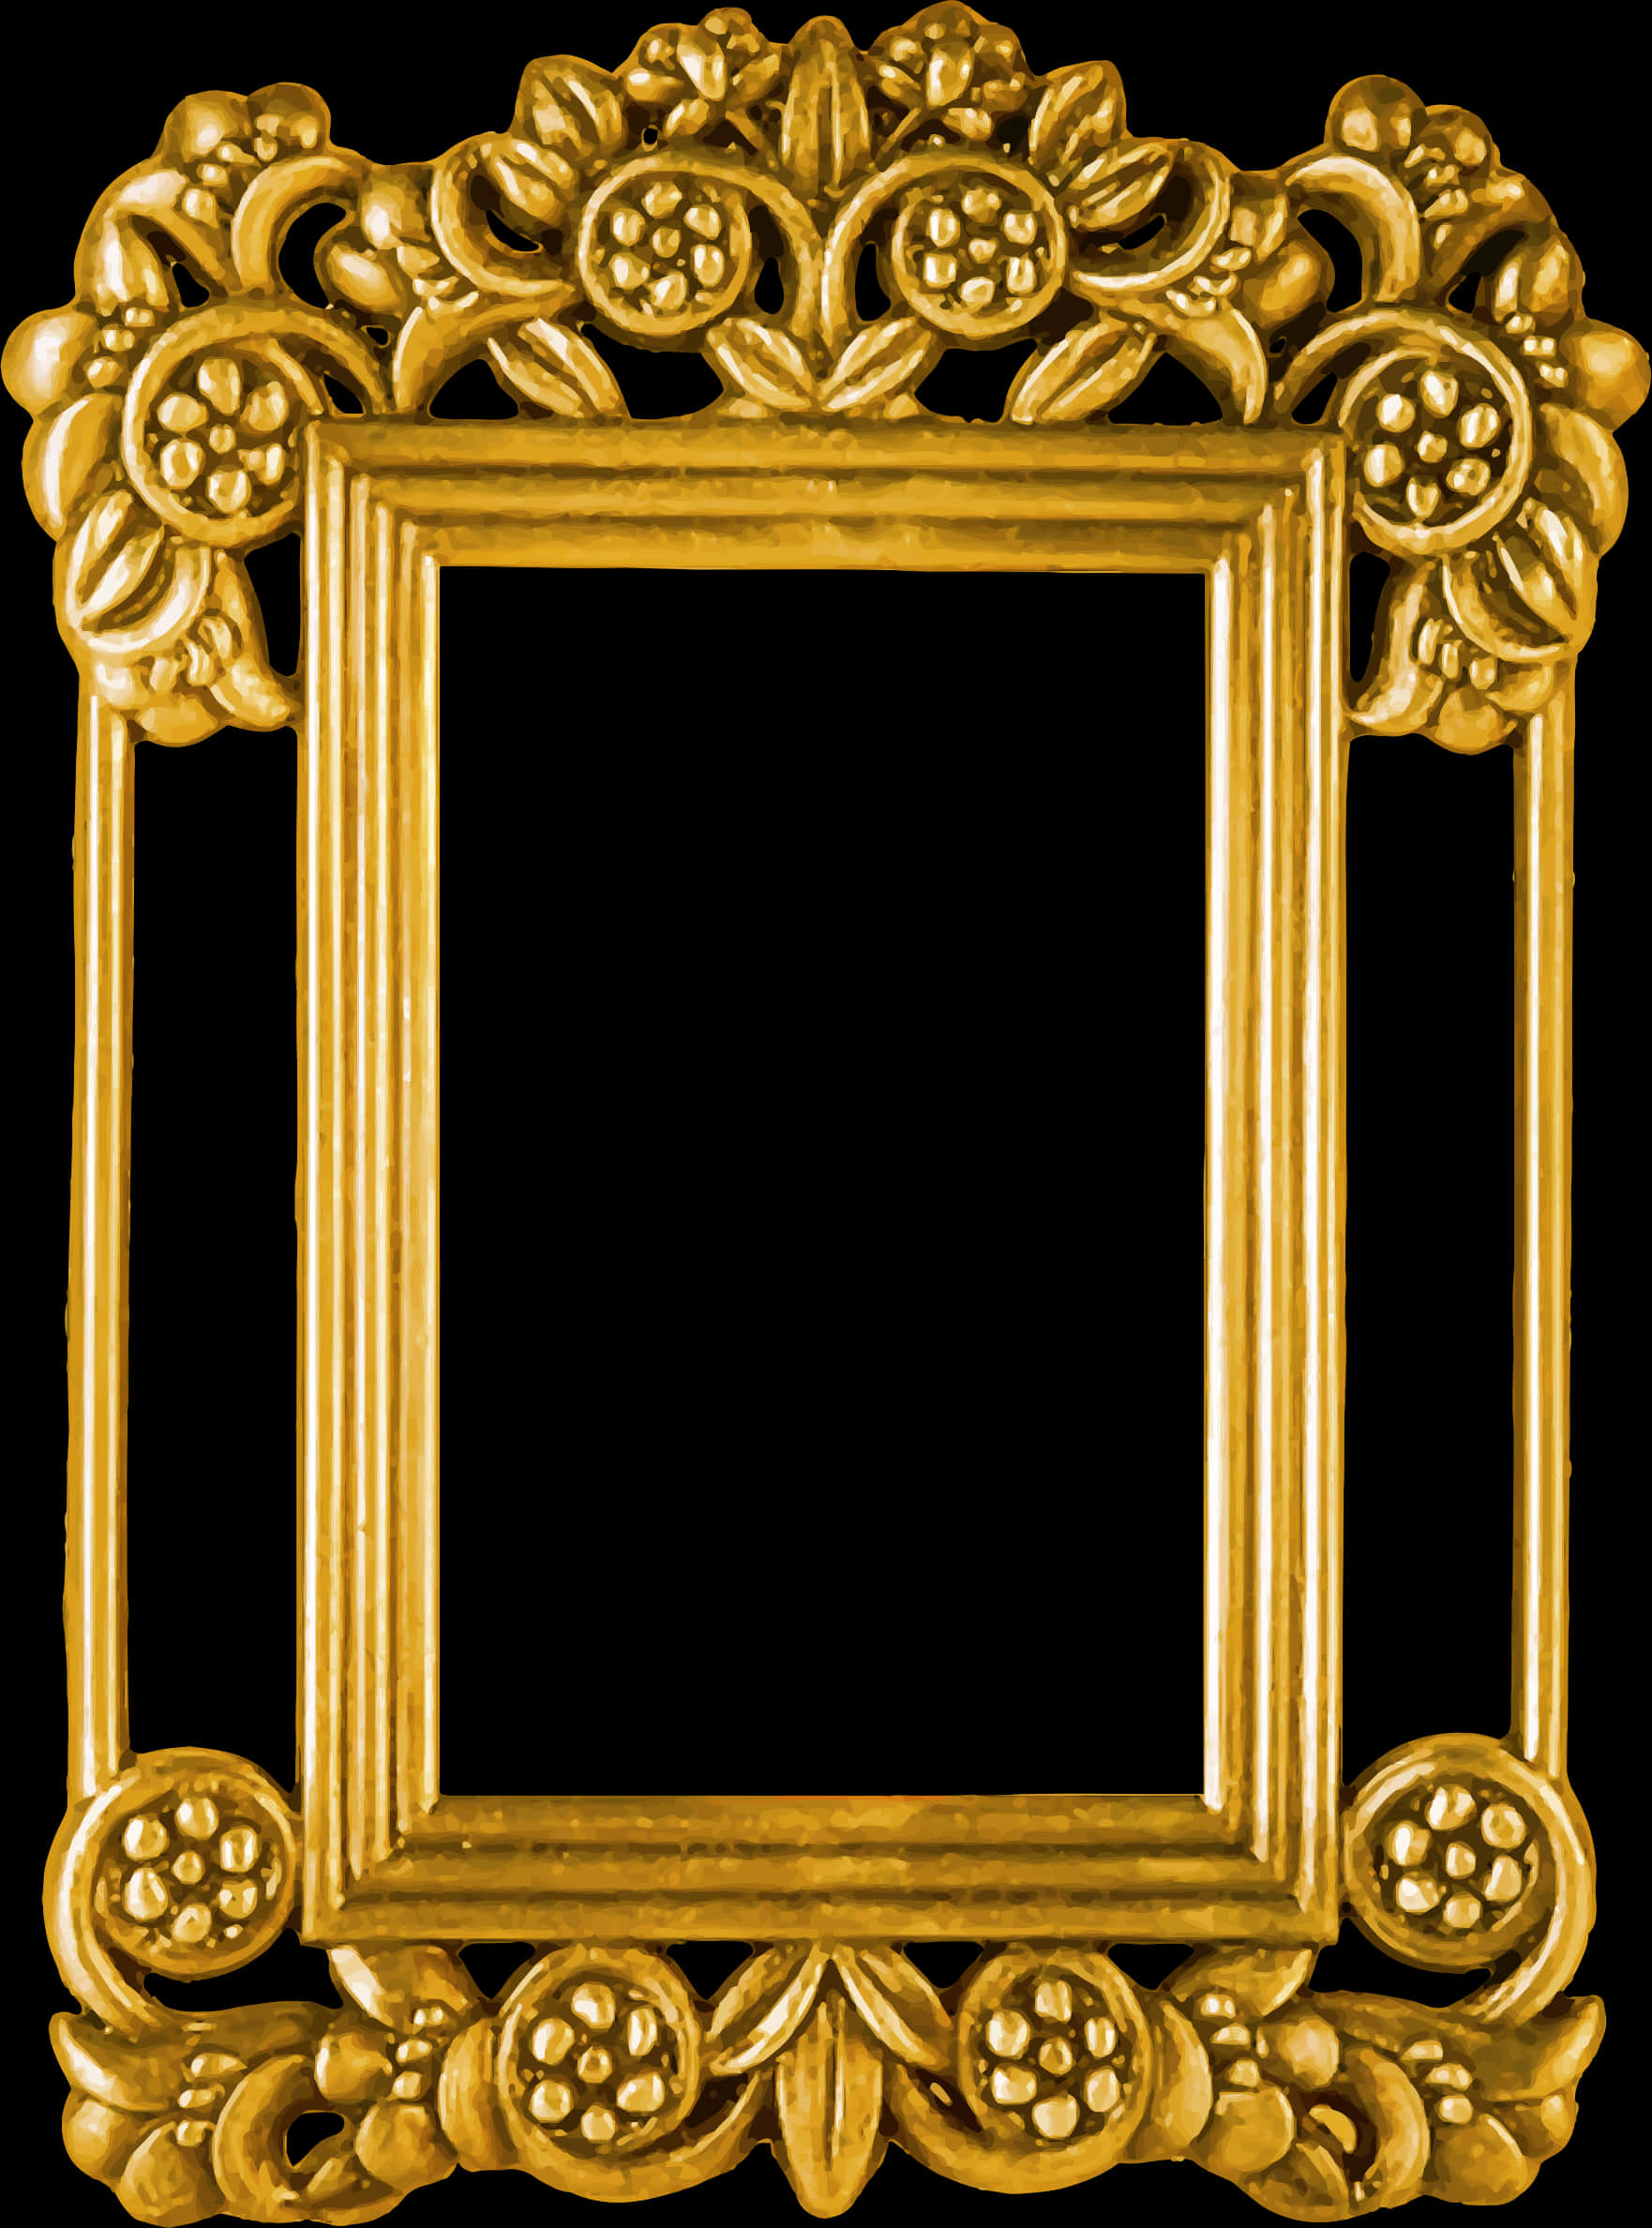 Ornate Golden Floral Frame